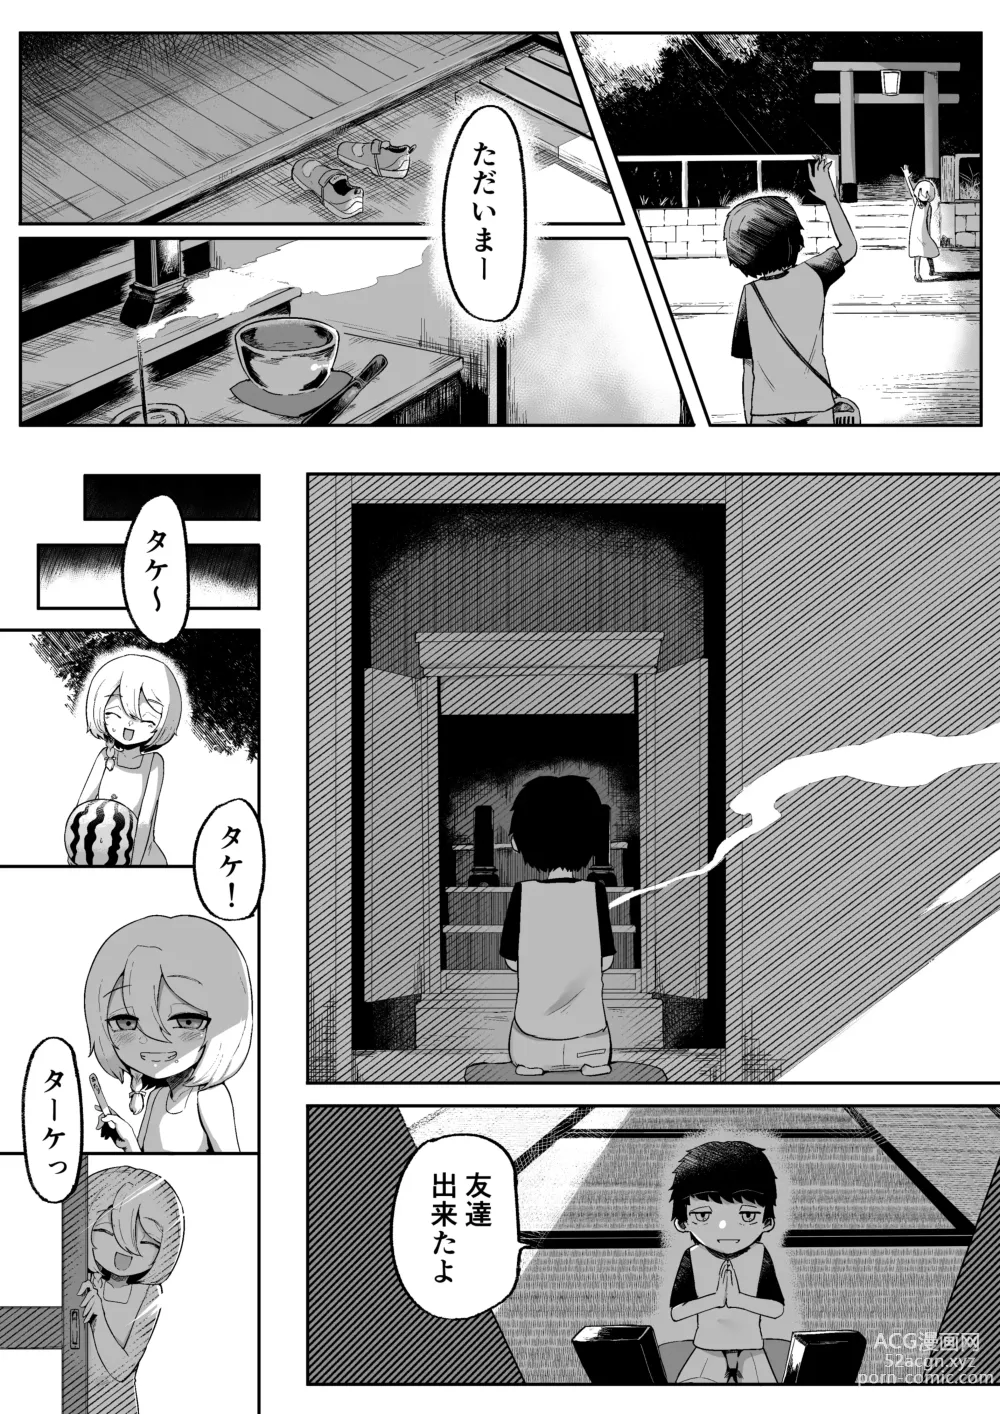 Page 5 of doujinshi Kamisama to Kodomo ga Dekiru made